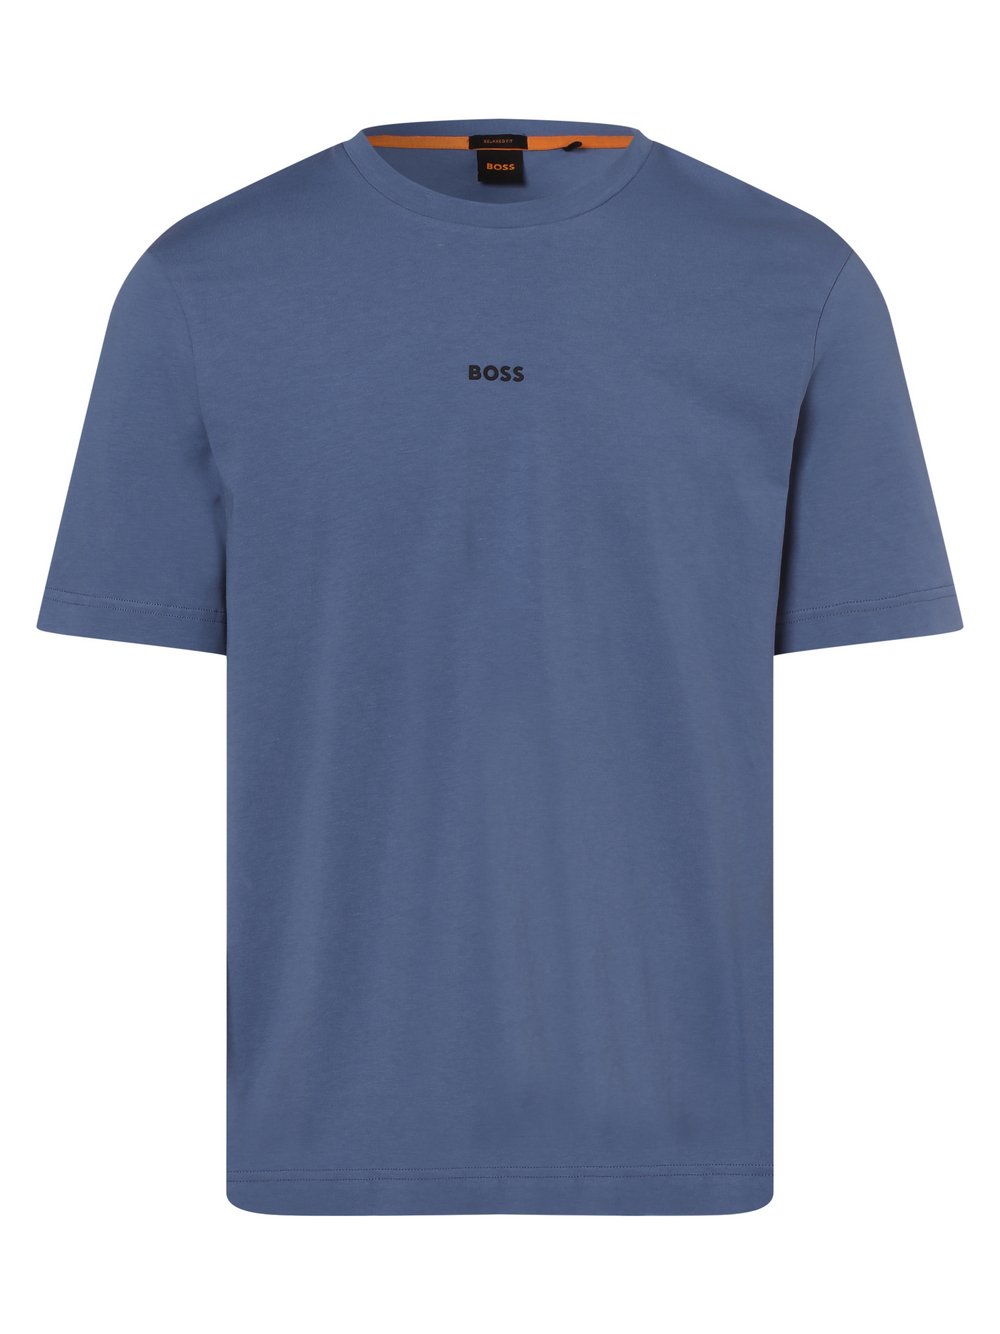 BOSS Orange - T-shirt męski – TChup, niebieski